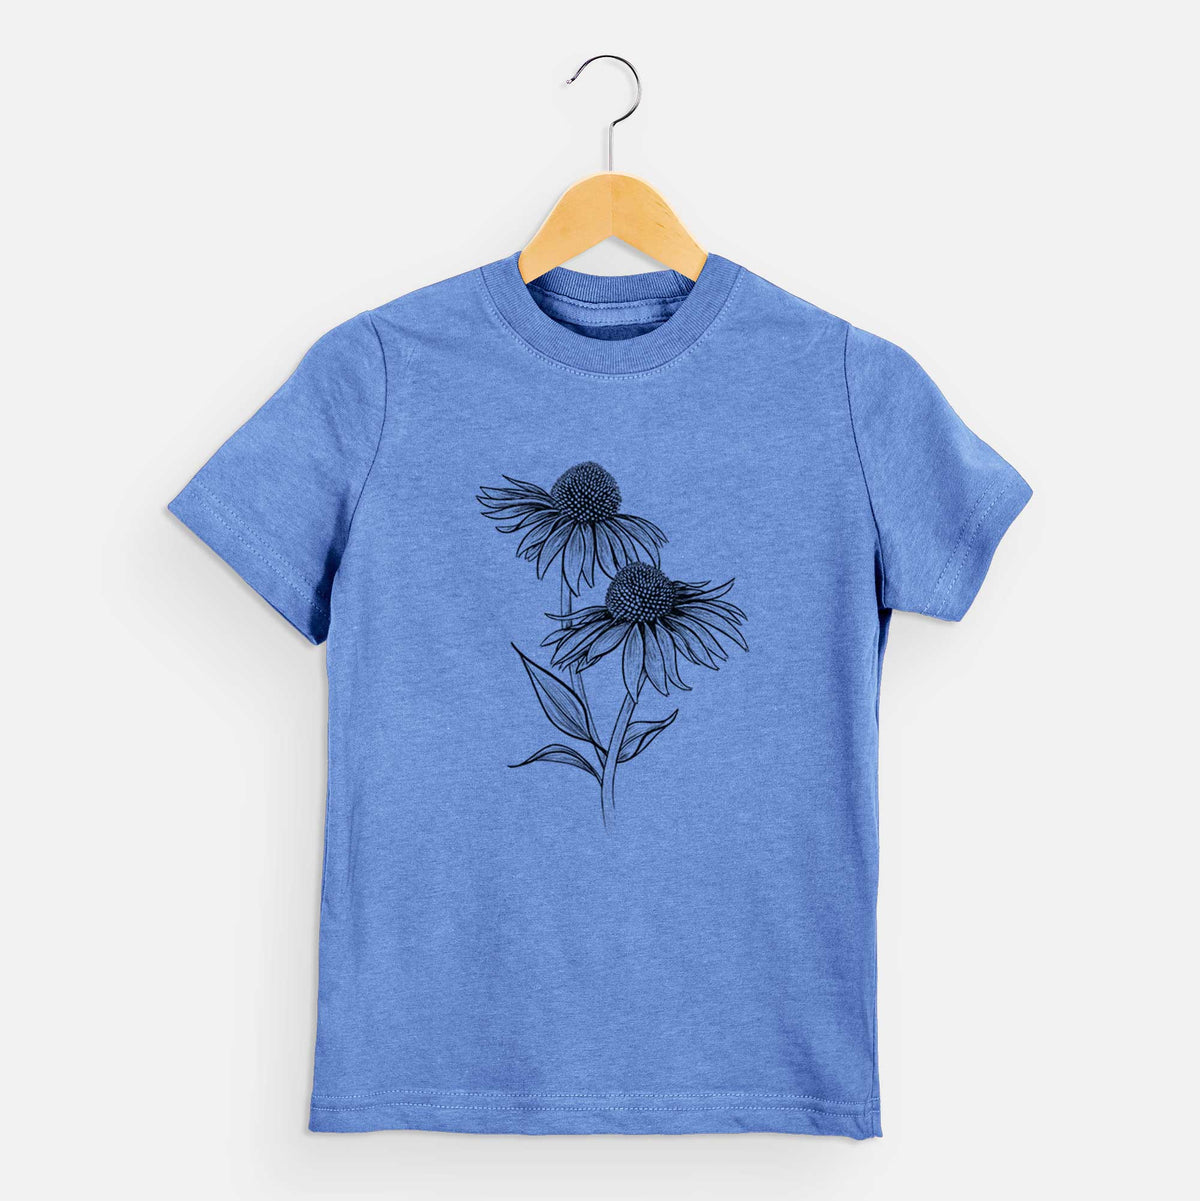 Coneflower - Echinacea purpurea - Kids Shirt